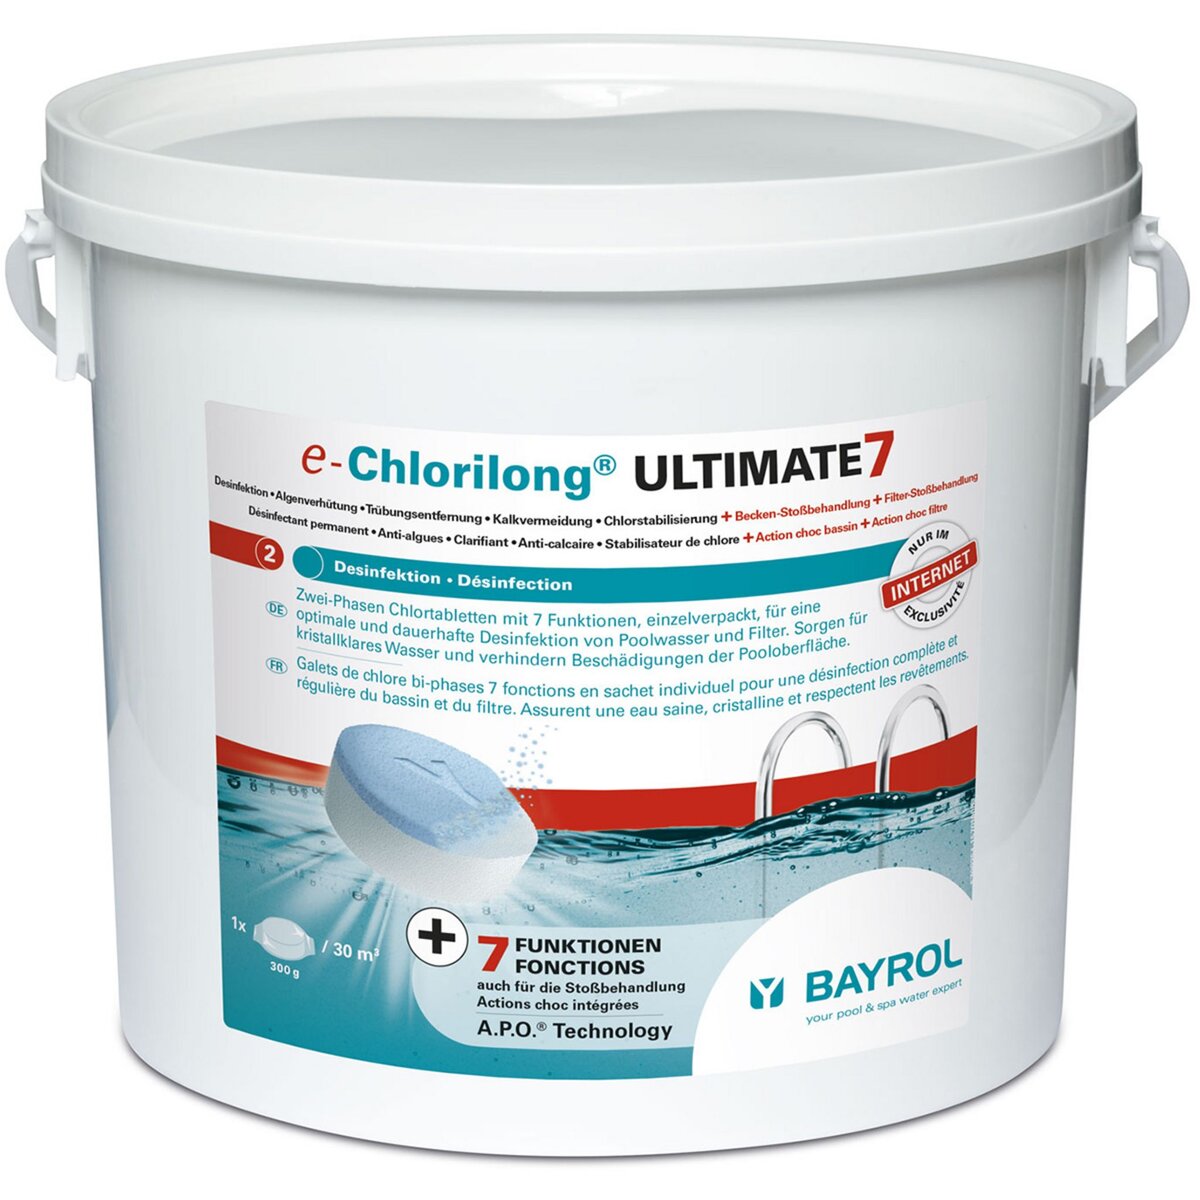 Bayrol Galets 2en1 chlore lent et rapide 4.8kg - chlorilong ultimate 7